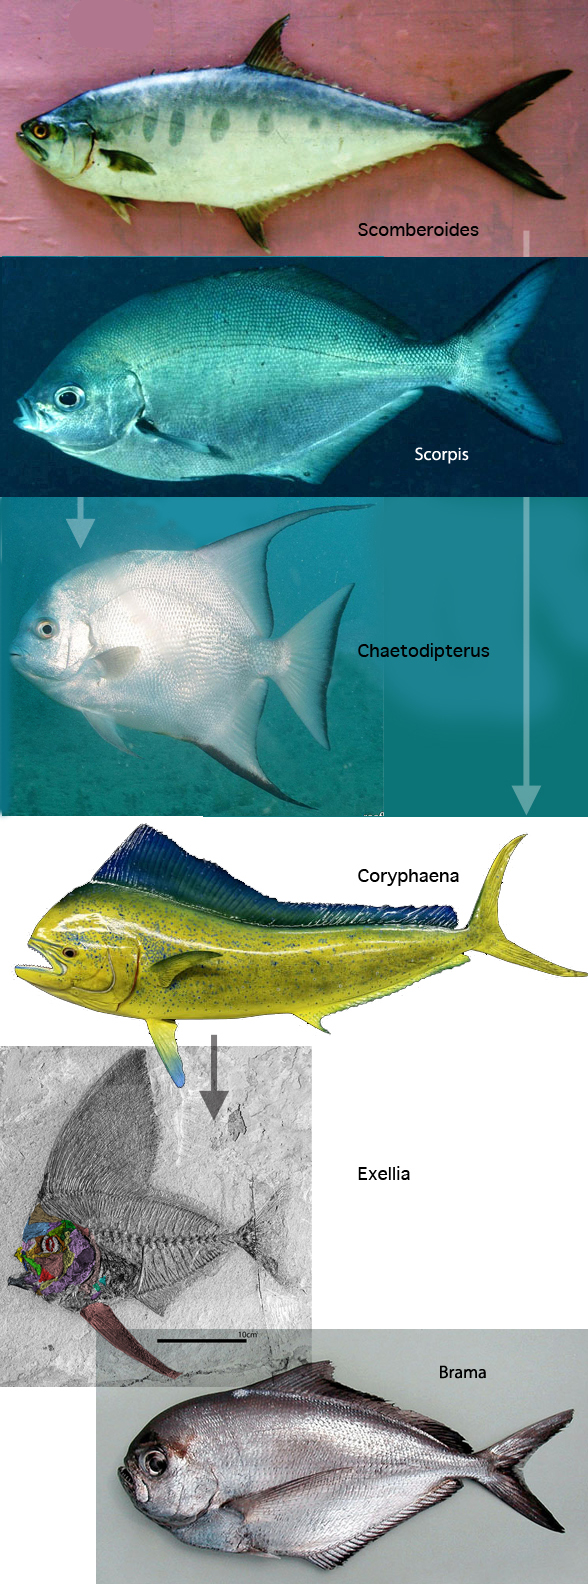 Scomberoides to Exellia evolution